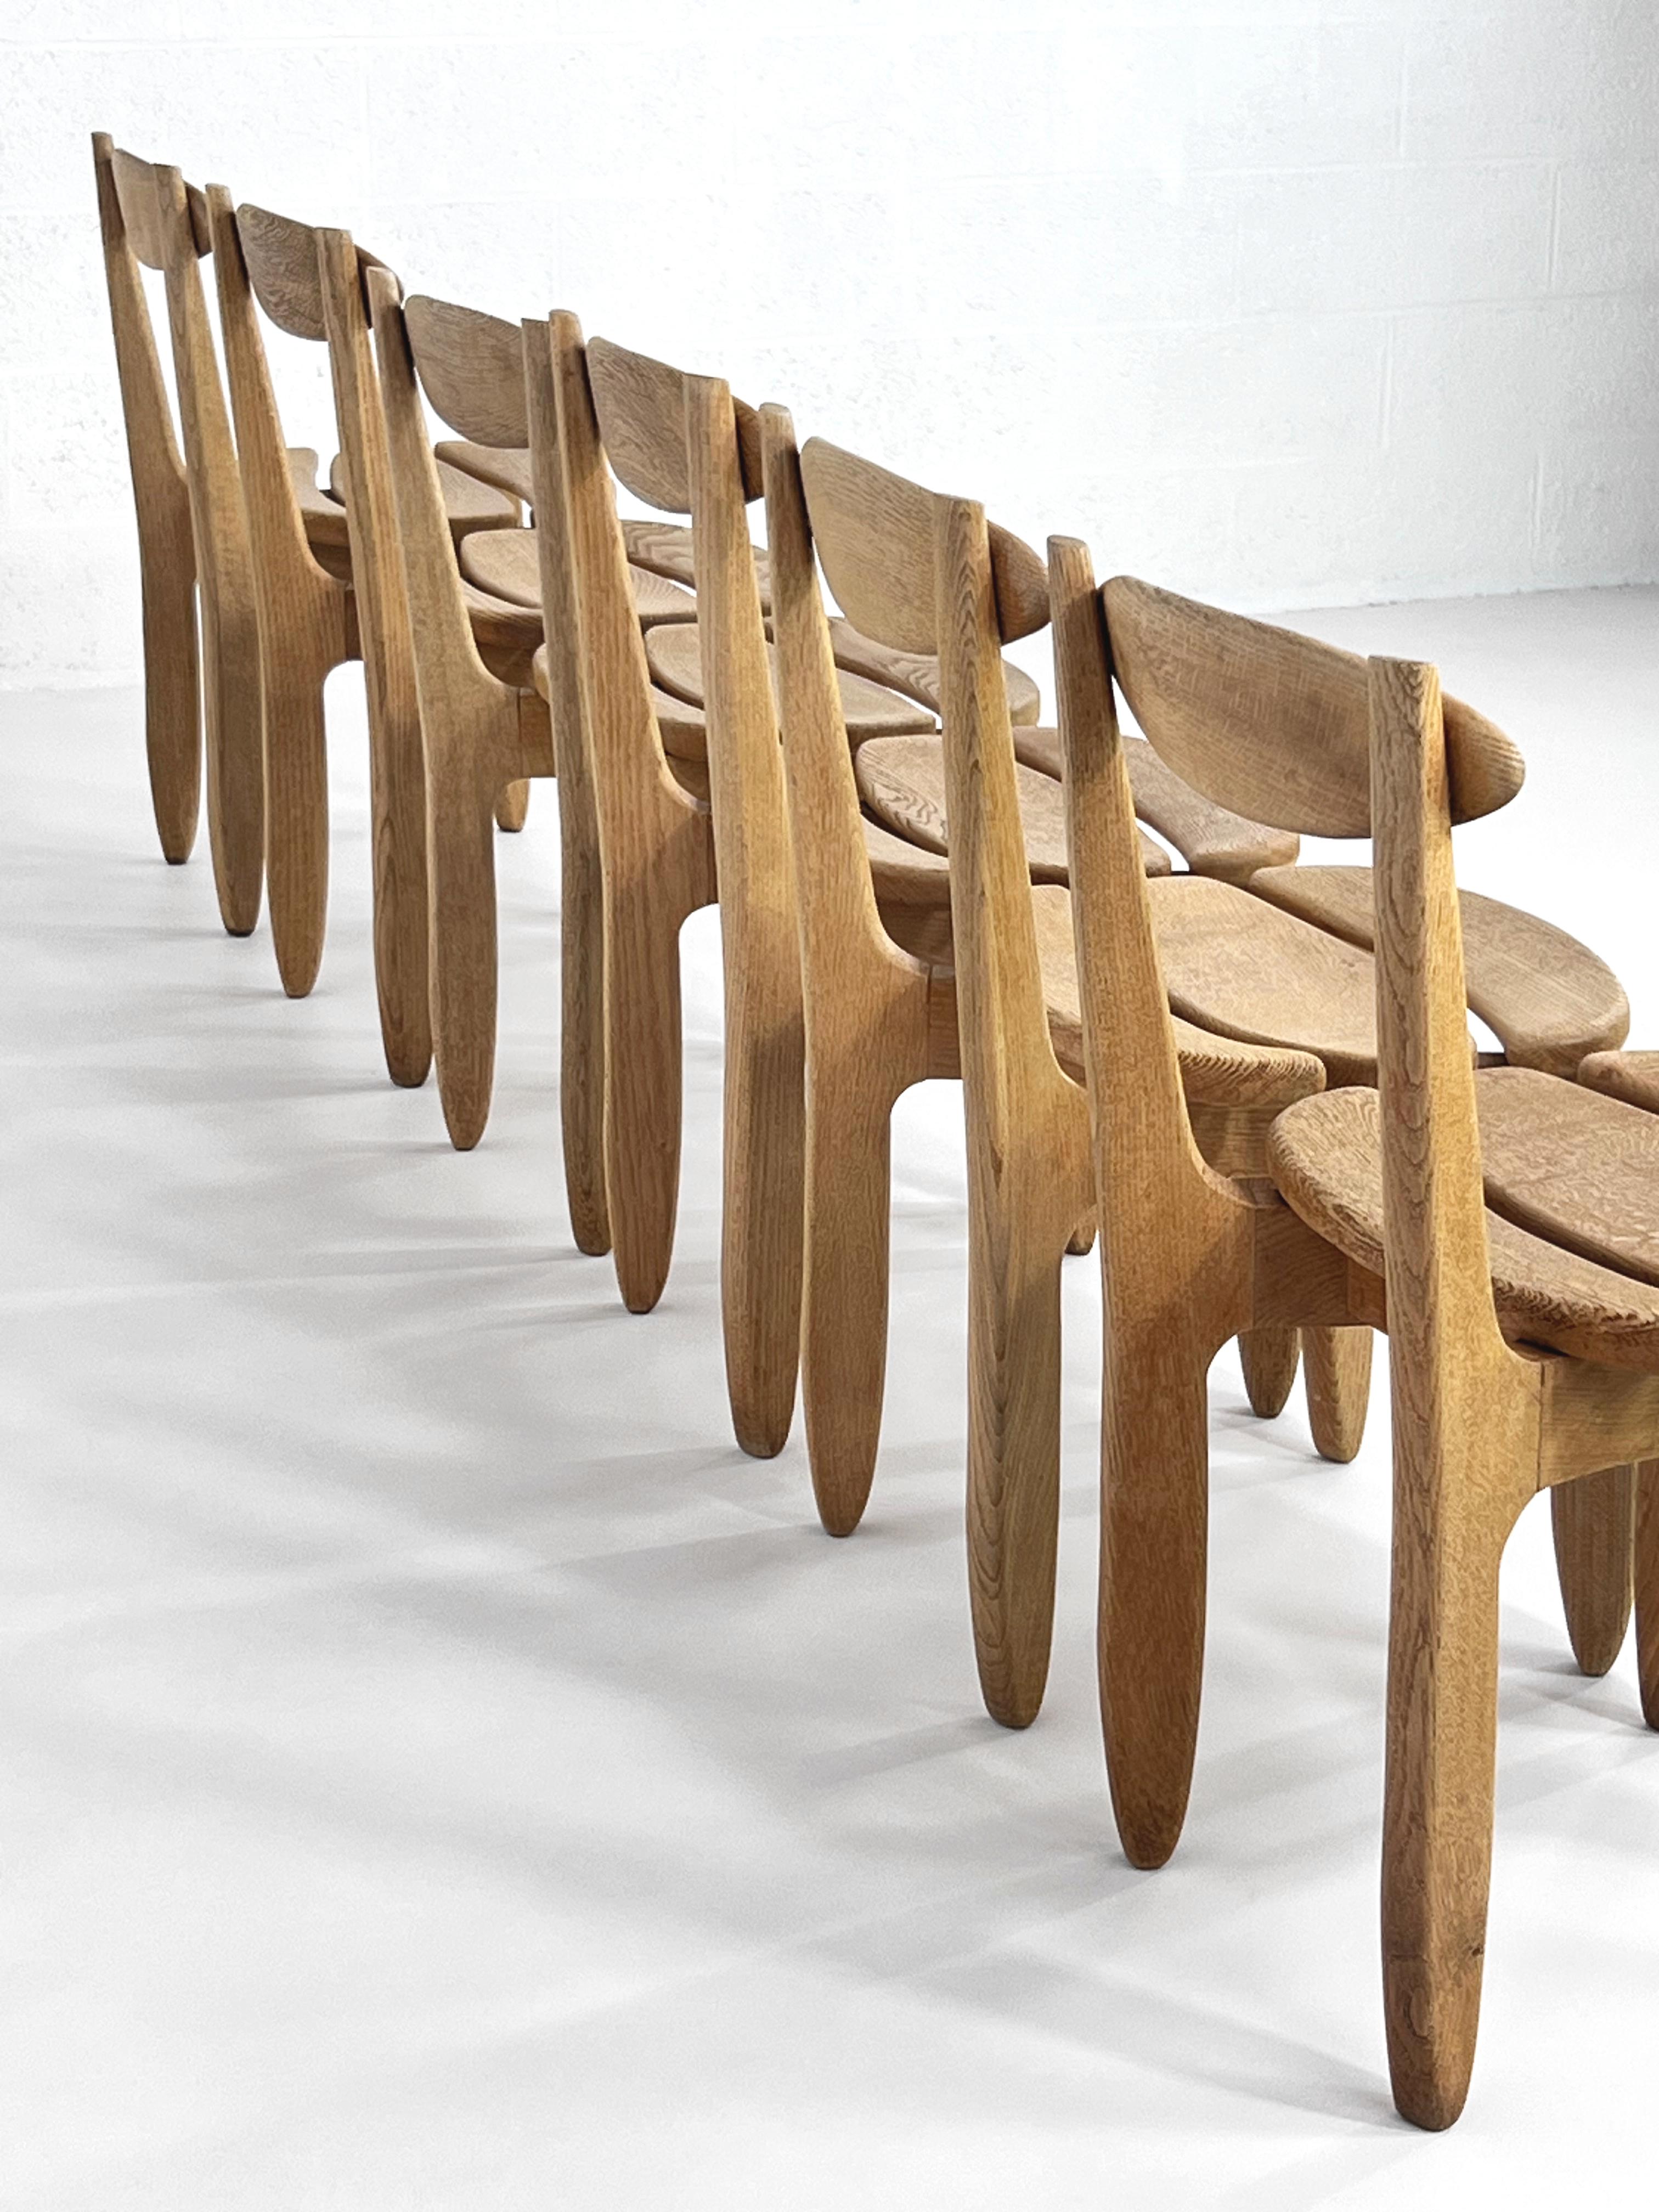 1960er Jahre Französisch Guillerme und Chambron Duo Design Eiche Holz Satz von 6 Esszimmerstühle 'Thierry' Modell.